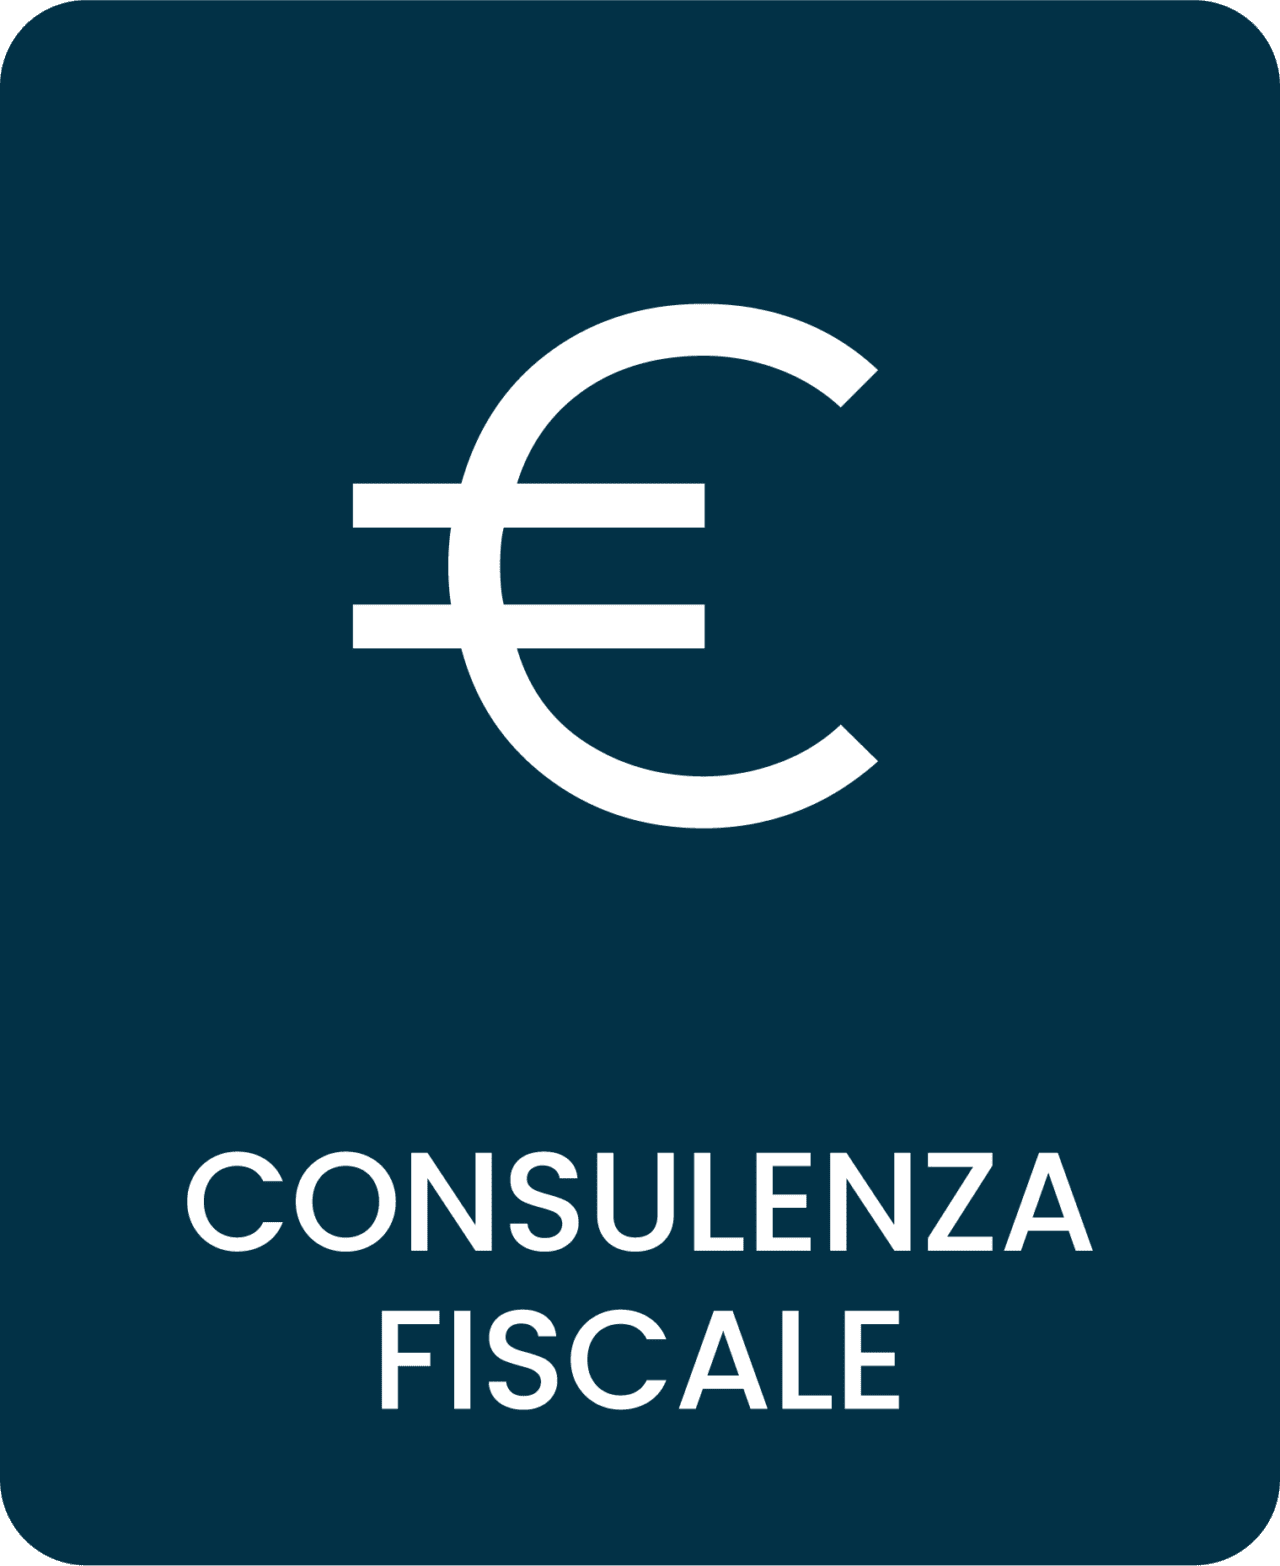 Consulenza fiscale